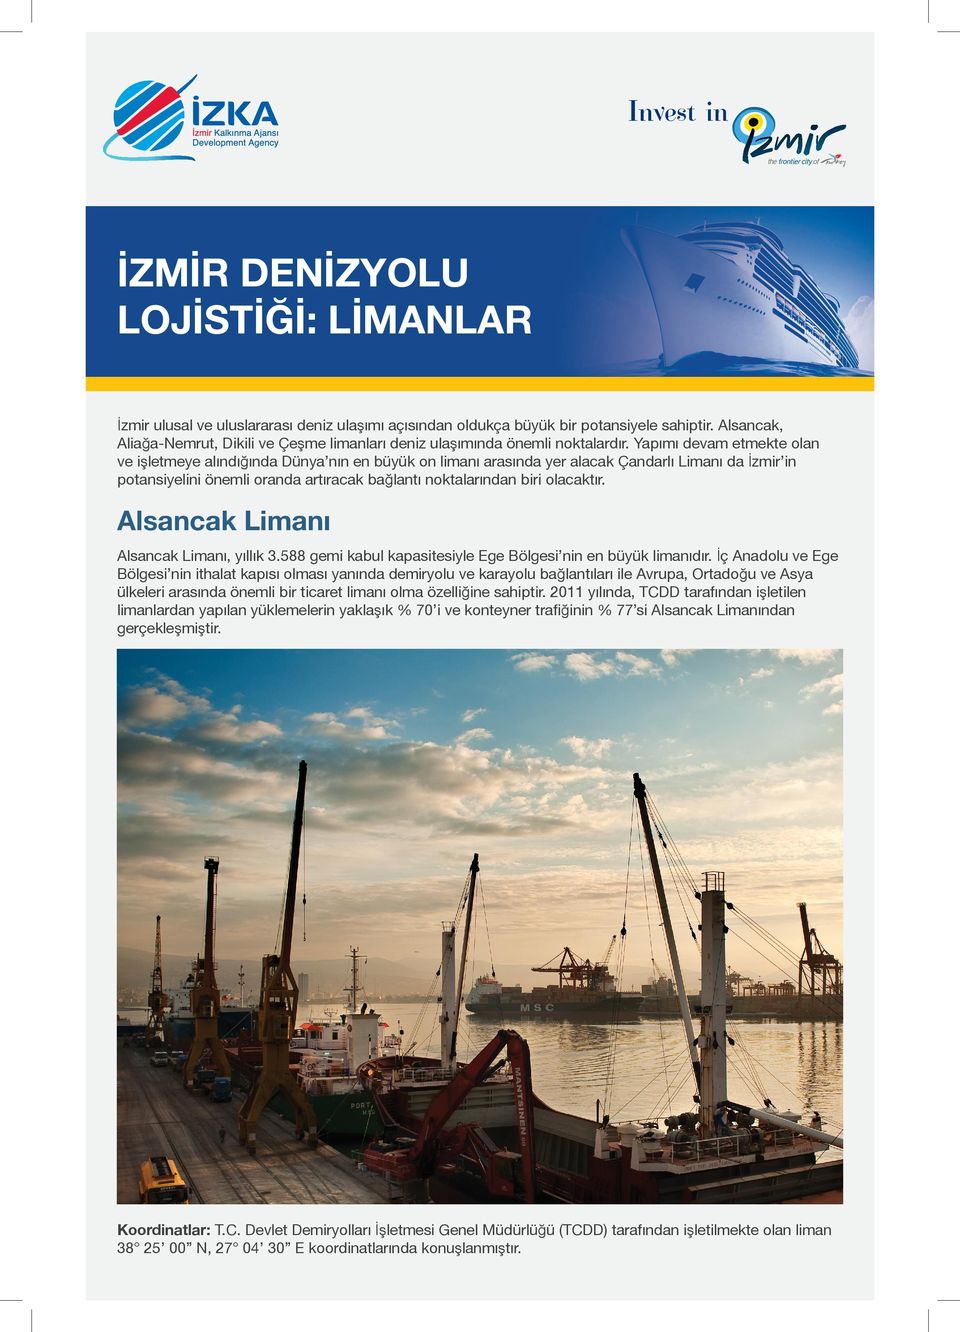 Yapımı devam etmekte olan ve işletmeye alındığında Dünya nın en büyük on limanı arasında yer alacak Çandarlı Limanı da İzmir in potansiyelini önemli oranda artıracak bağlantı noktalarından biri